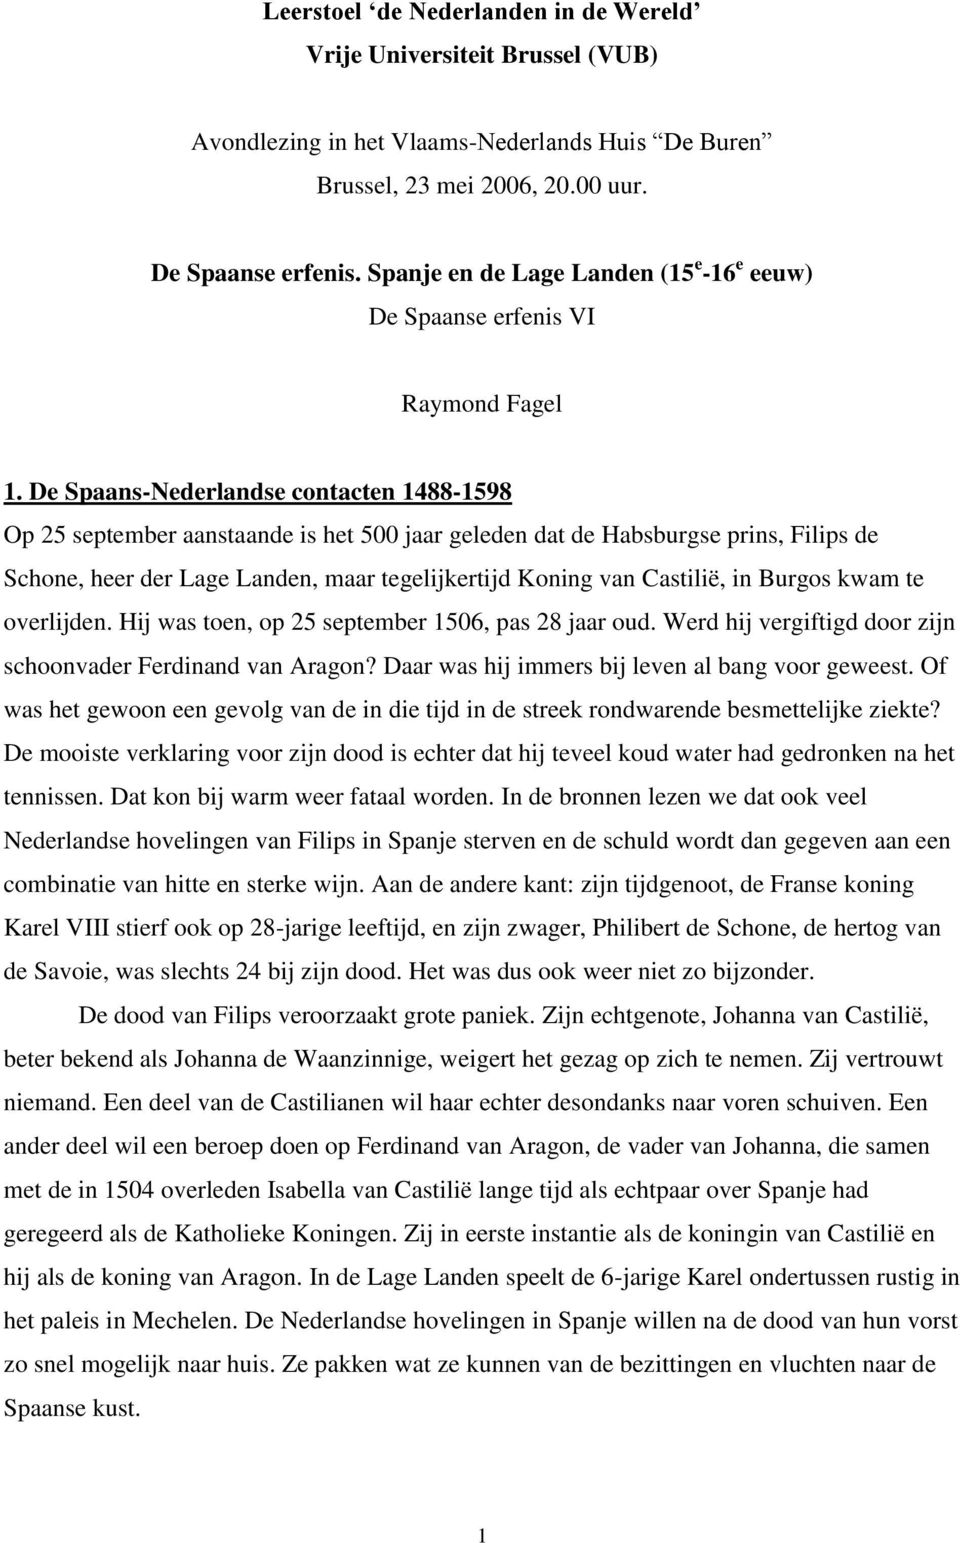 De Spaans-Nederlandse contacten 1488-1598 Op 25 september aanstaande is het 500 jaar geleden dat de Habsburgse prins, Filips de Schone, heer der Lage Landen, maar tegelijkertijd Koning van Castilië,